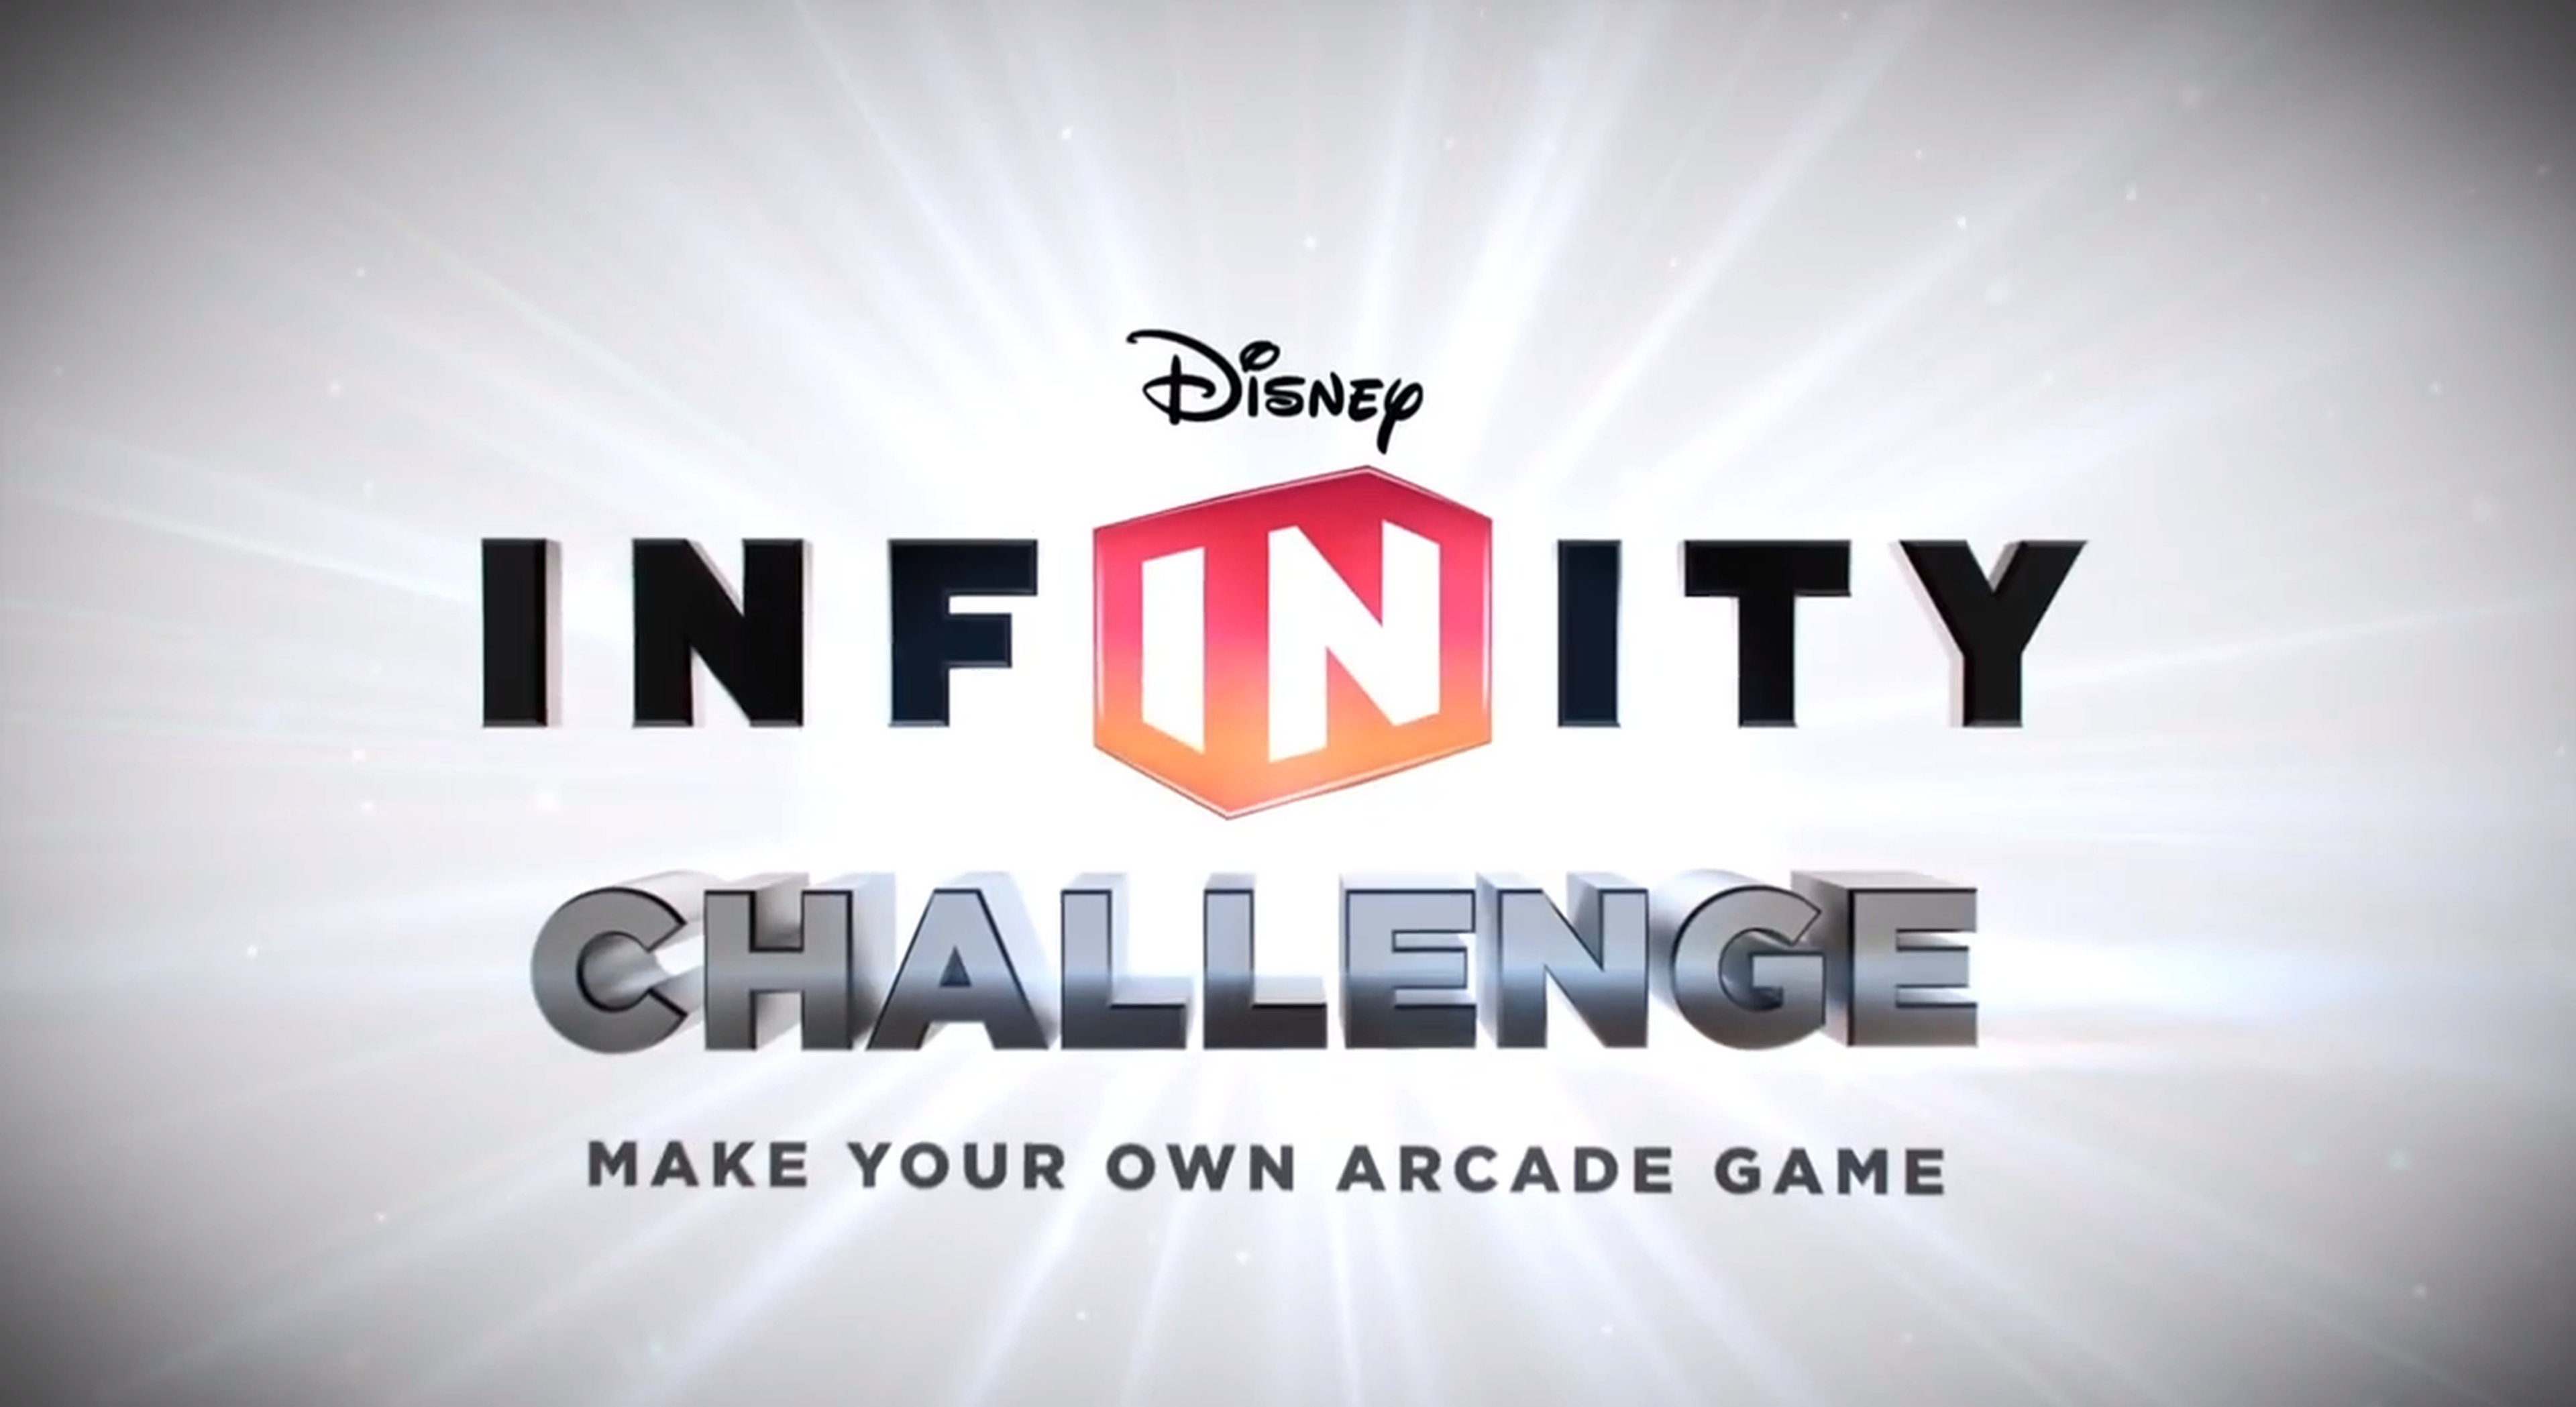 Desafío Disney Infinity: tu propio juego arcade